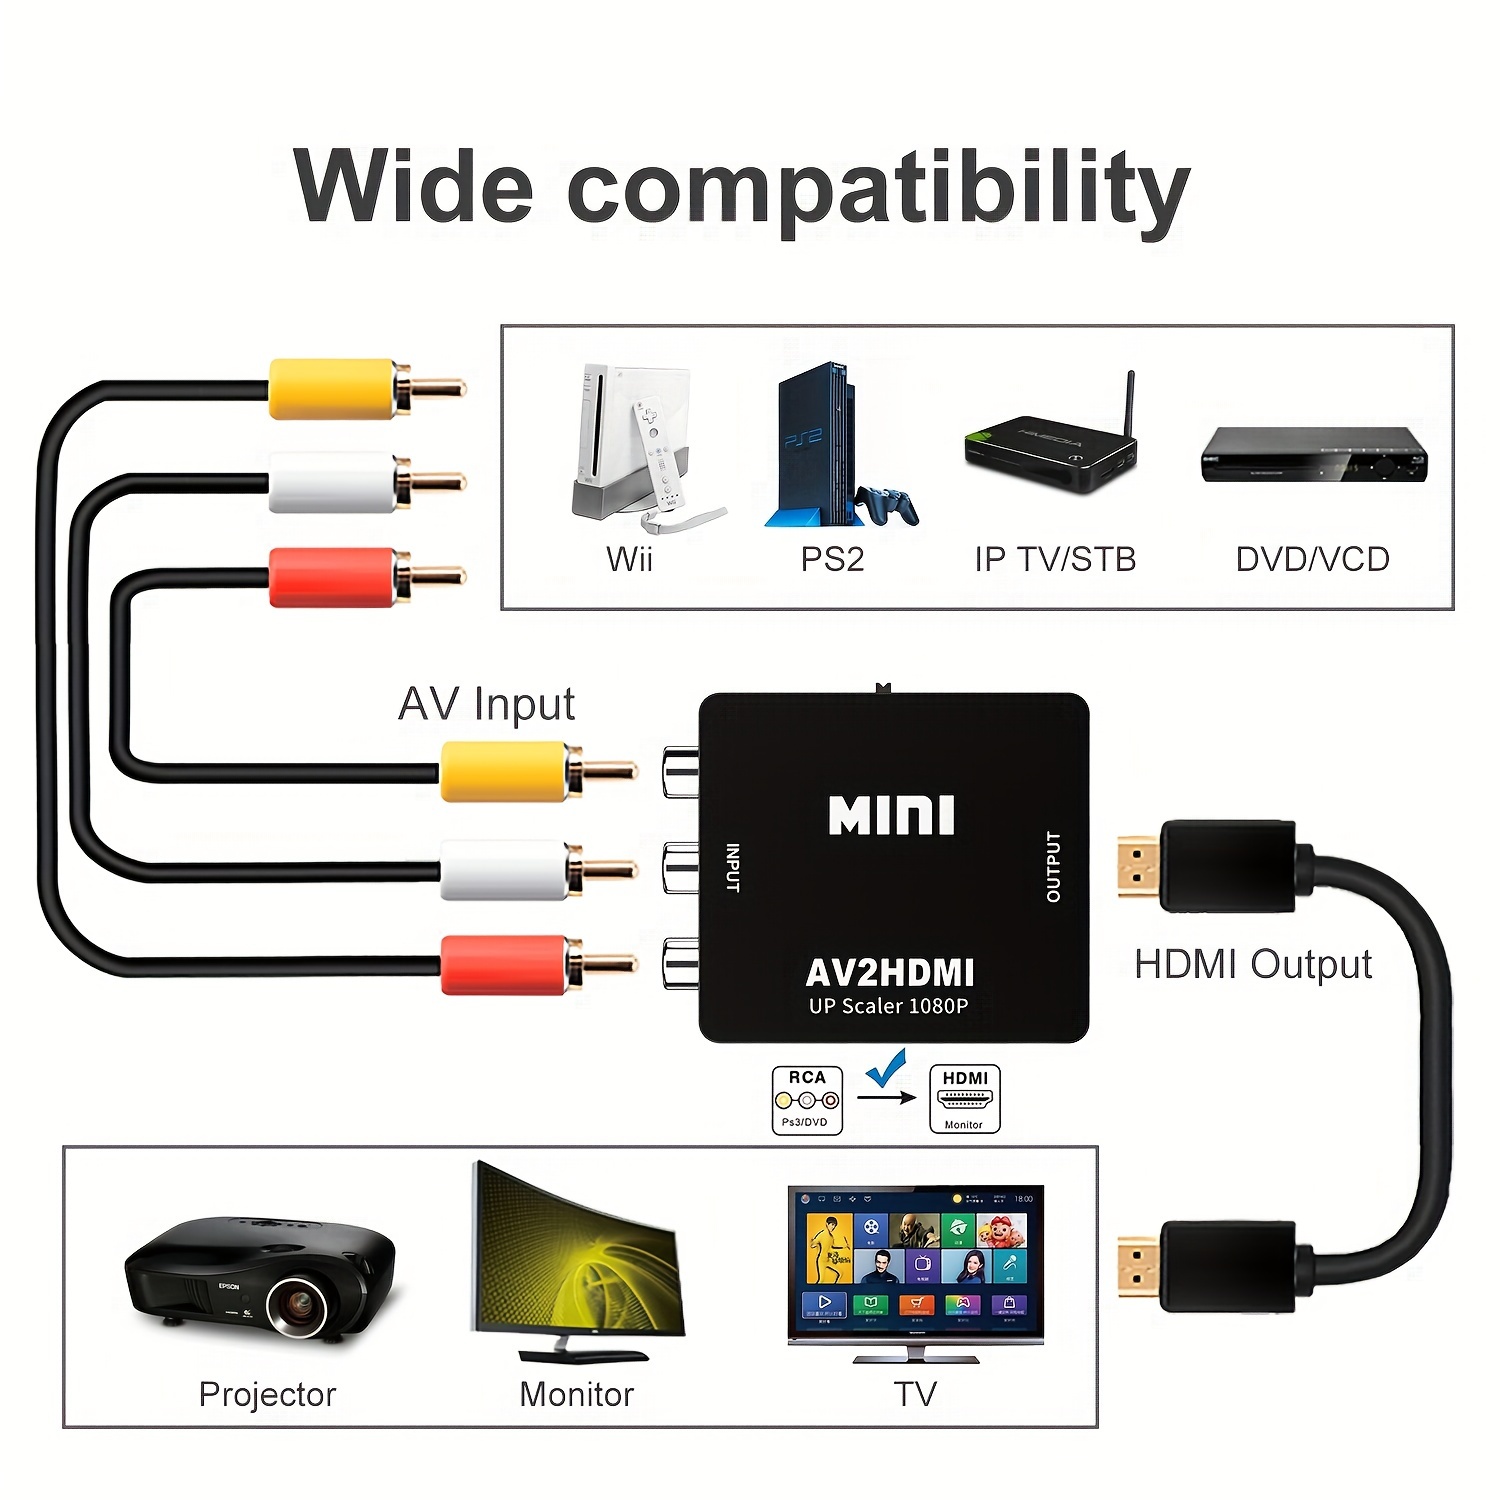 Cable adaptador HDMI compatible a RCA AV Cable convertidor de 1 m para  cámara DVD TV LCD